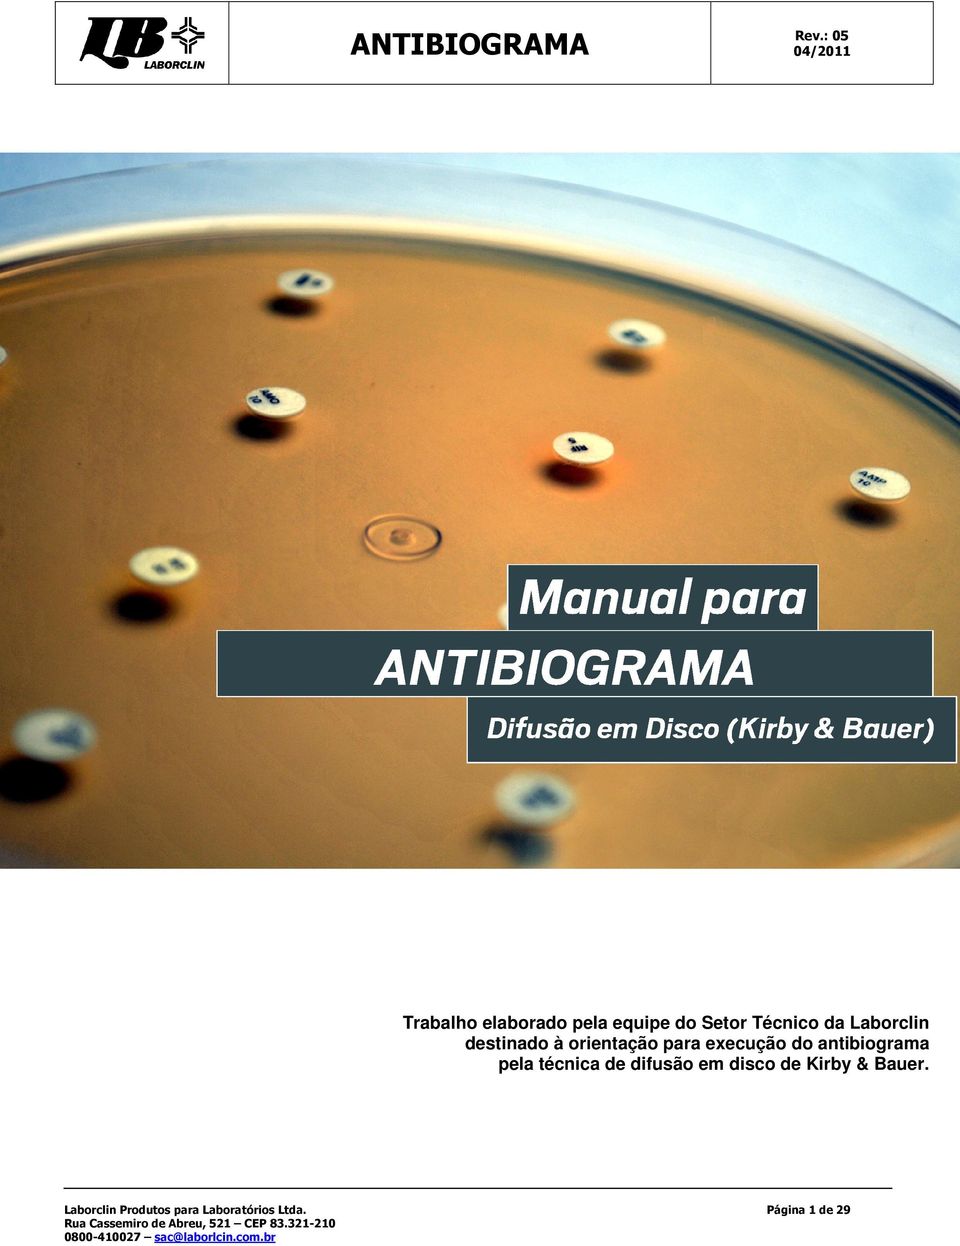 orientação para execução do antibiograma pela